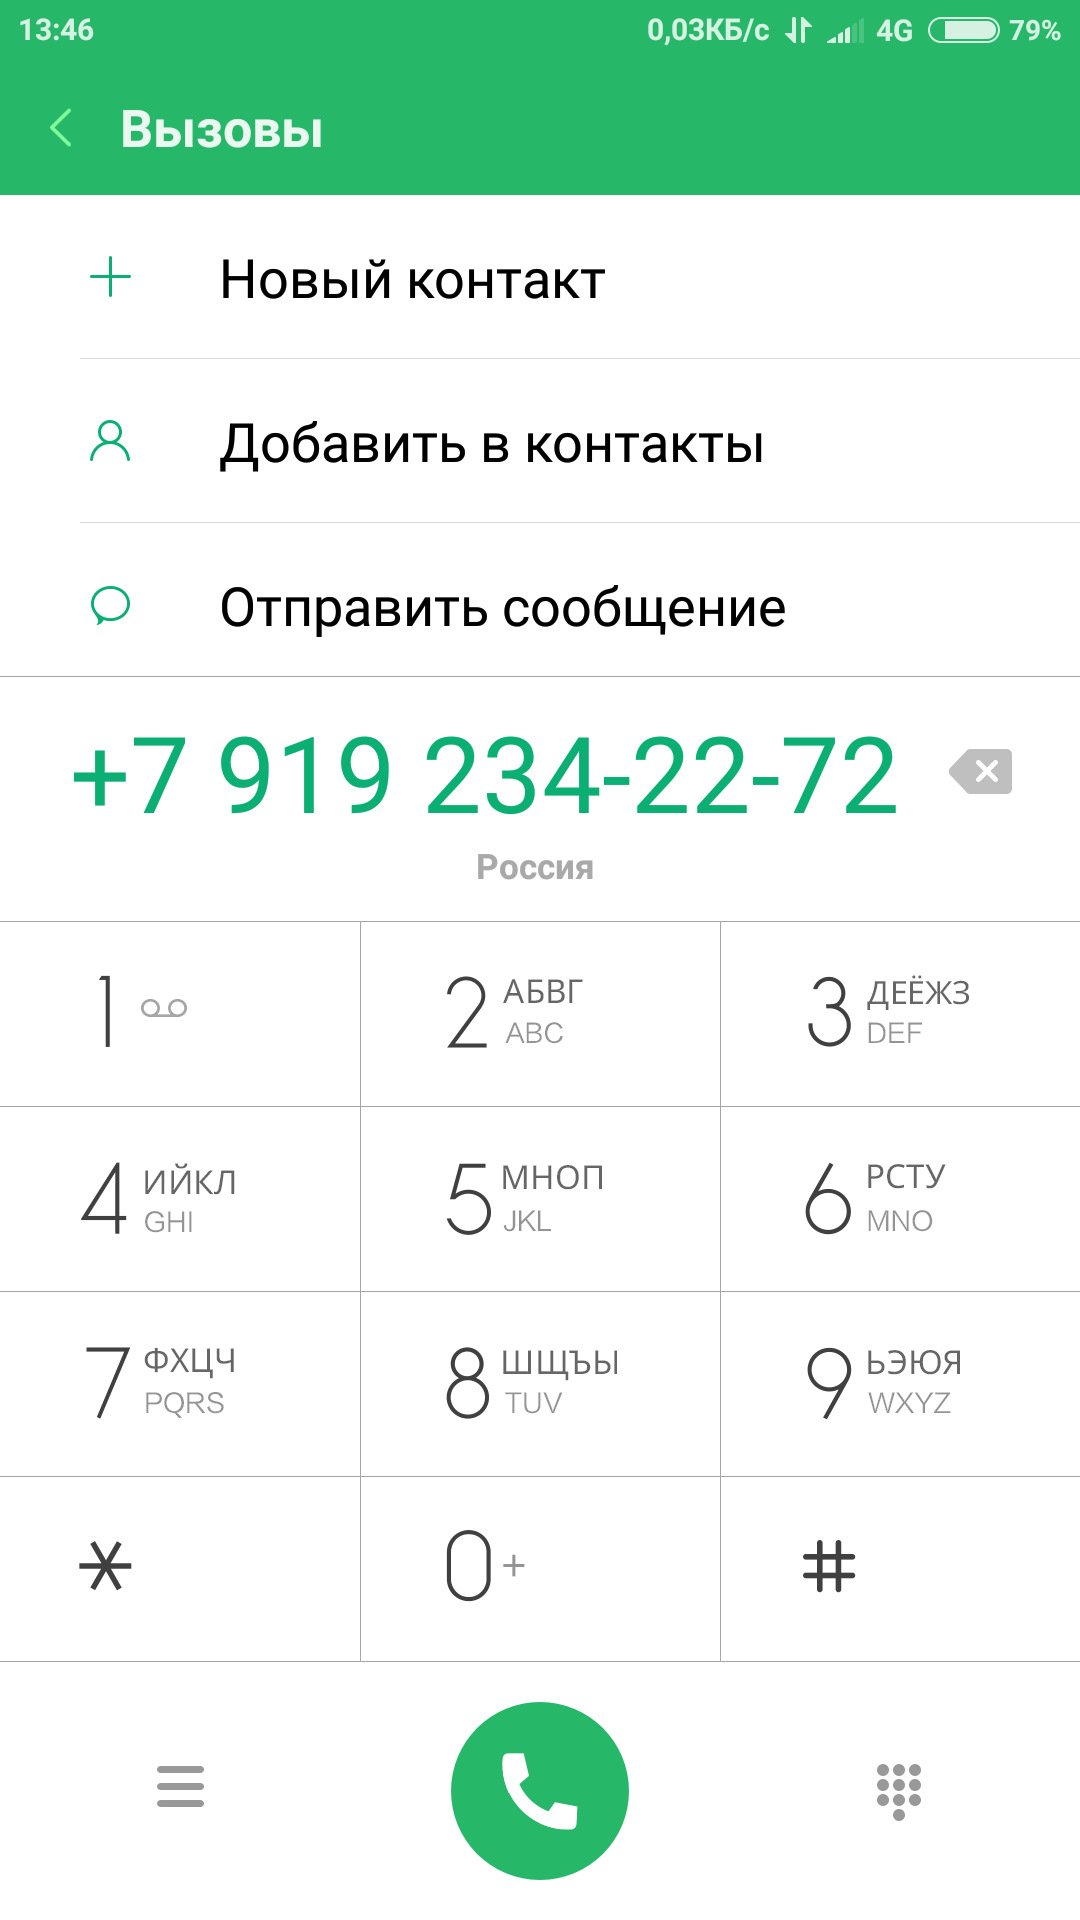 Номер телефона мегафона для связи